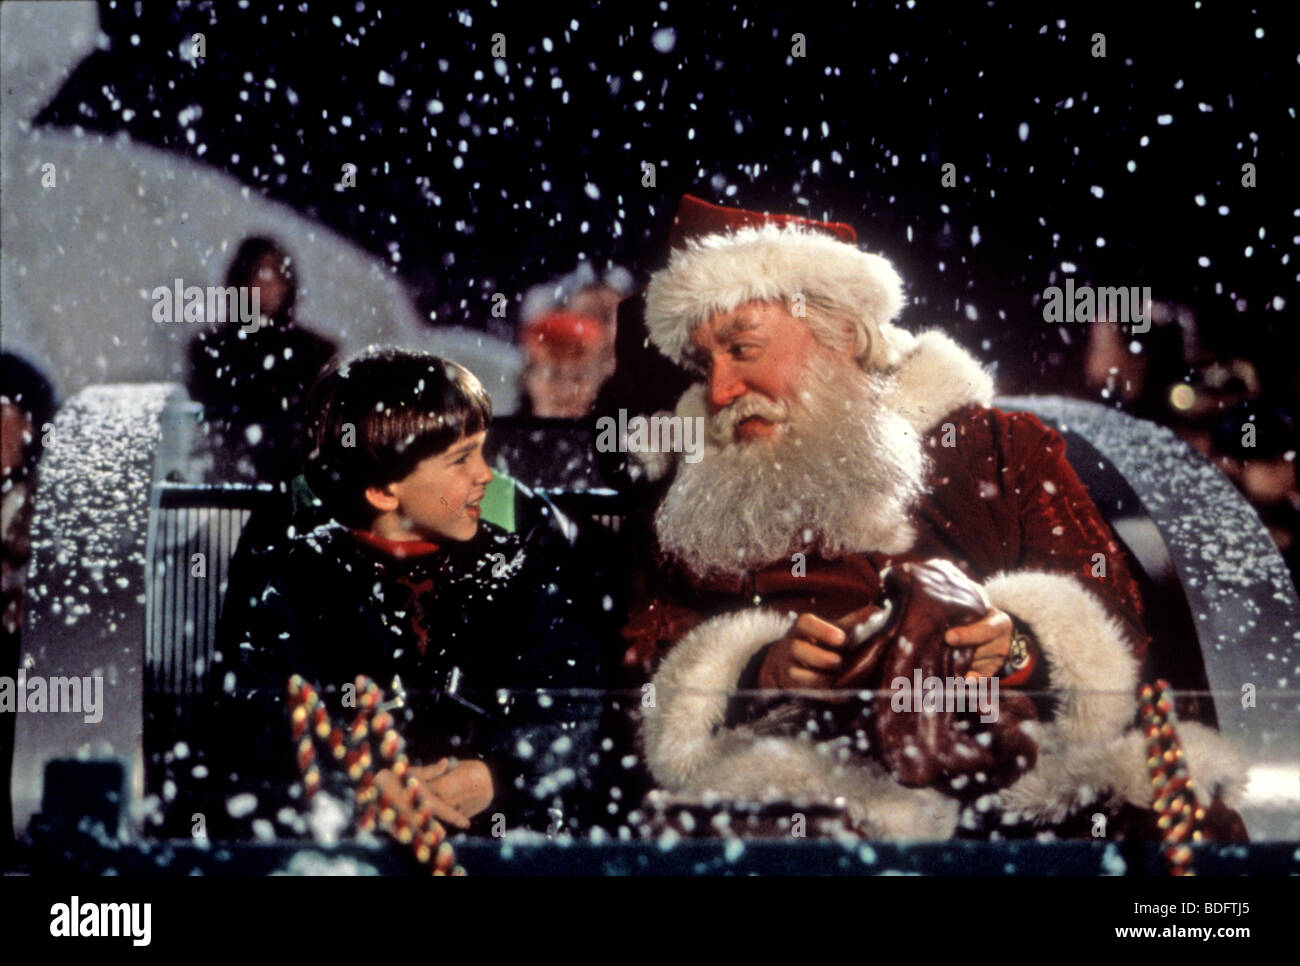 Foto Babbo Natale 94.Il Babbo Natale 1994 Buena Vista Film Di Walt Disney Con Tim Allen Foto Stock Alamy